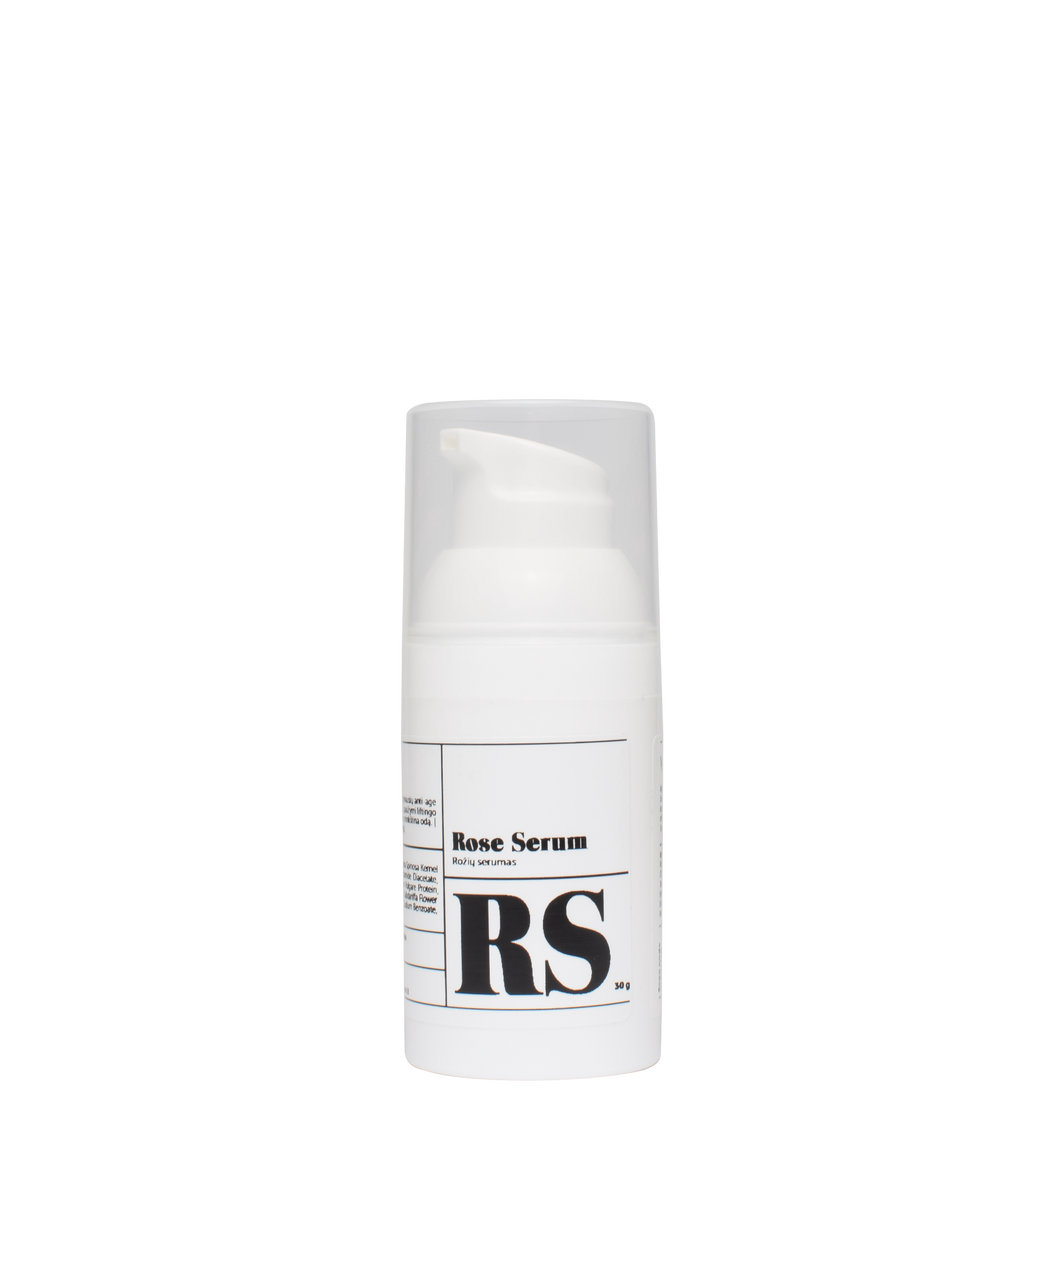 Rose serum, 30g - premium anti-aging skin care